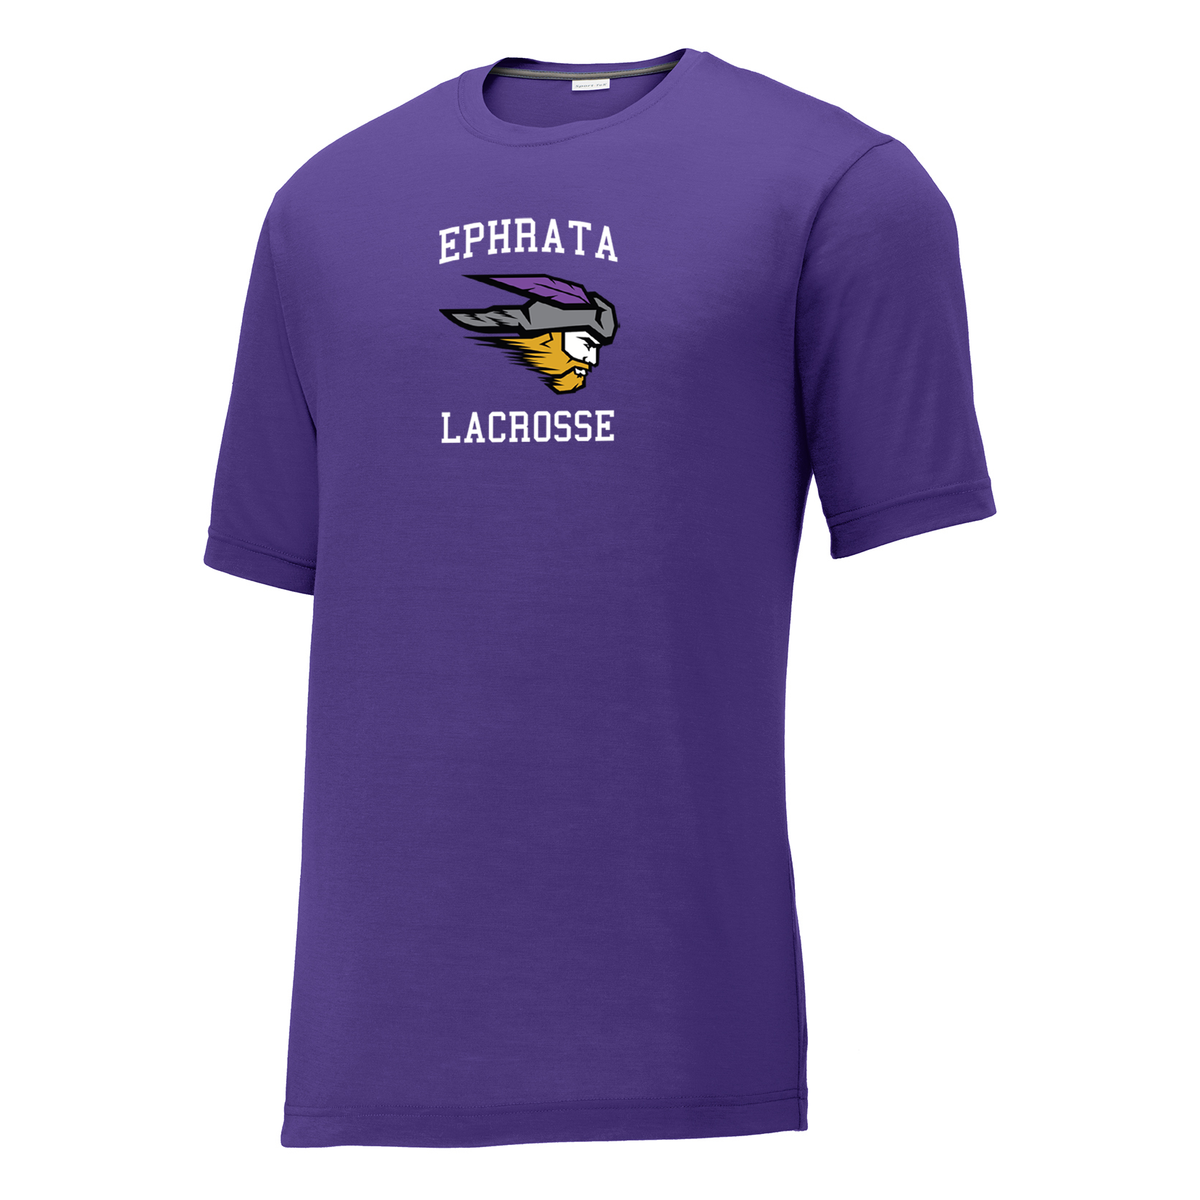 Ephrata Lacrosse CottonTouch Performance T-Shirt